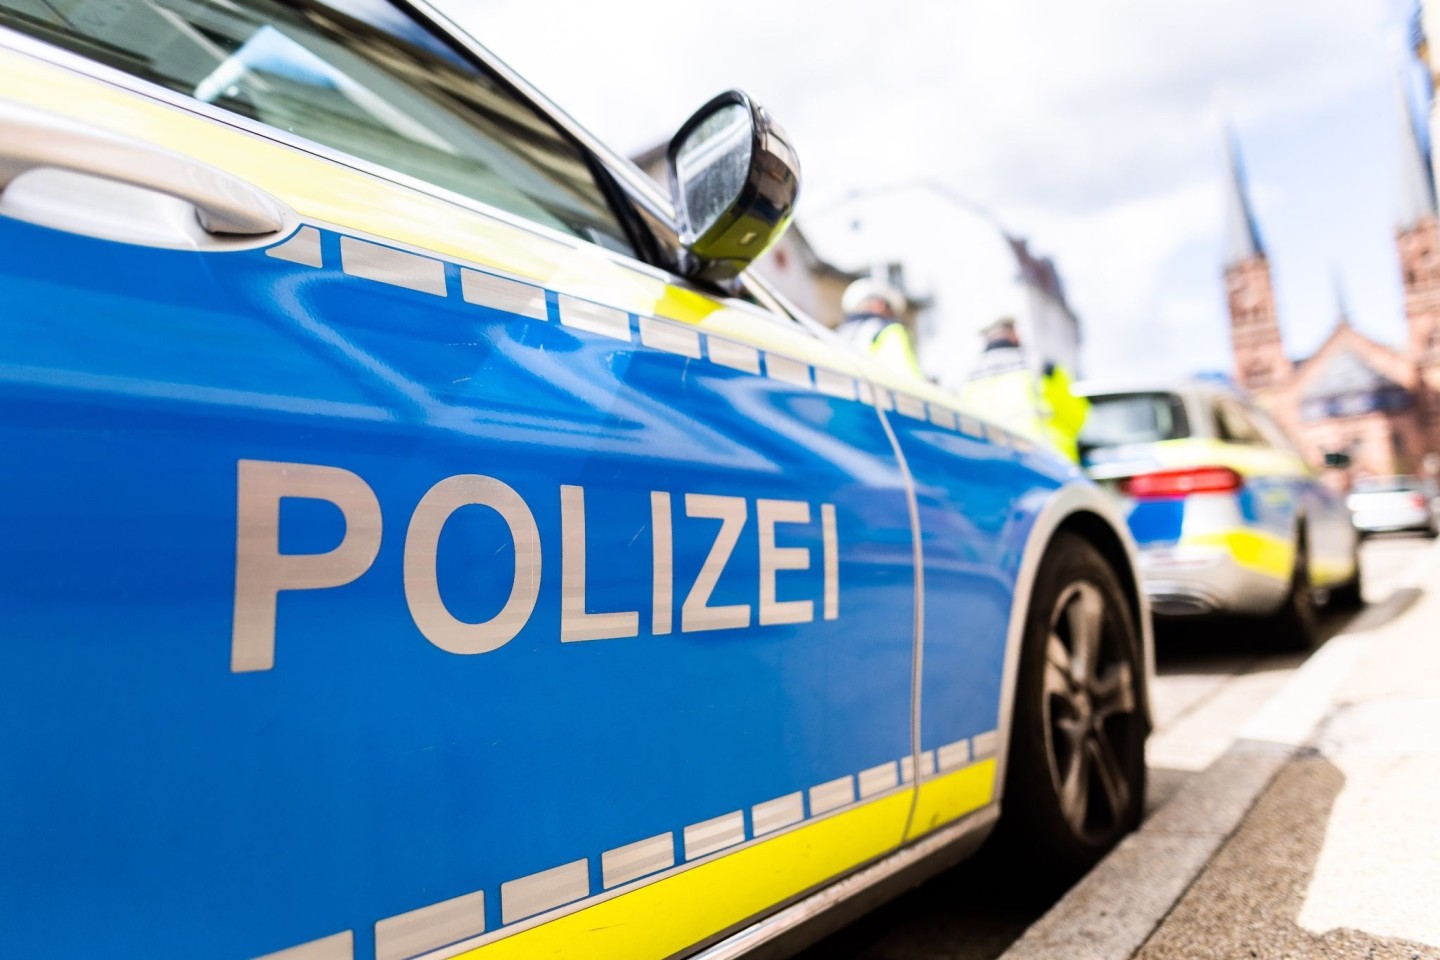 Die Polizei hat in Saarbrücken einen Paketedieb gefasst.